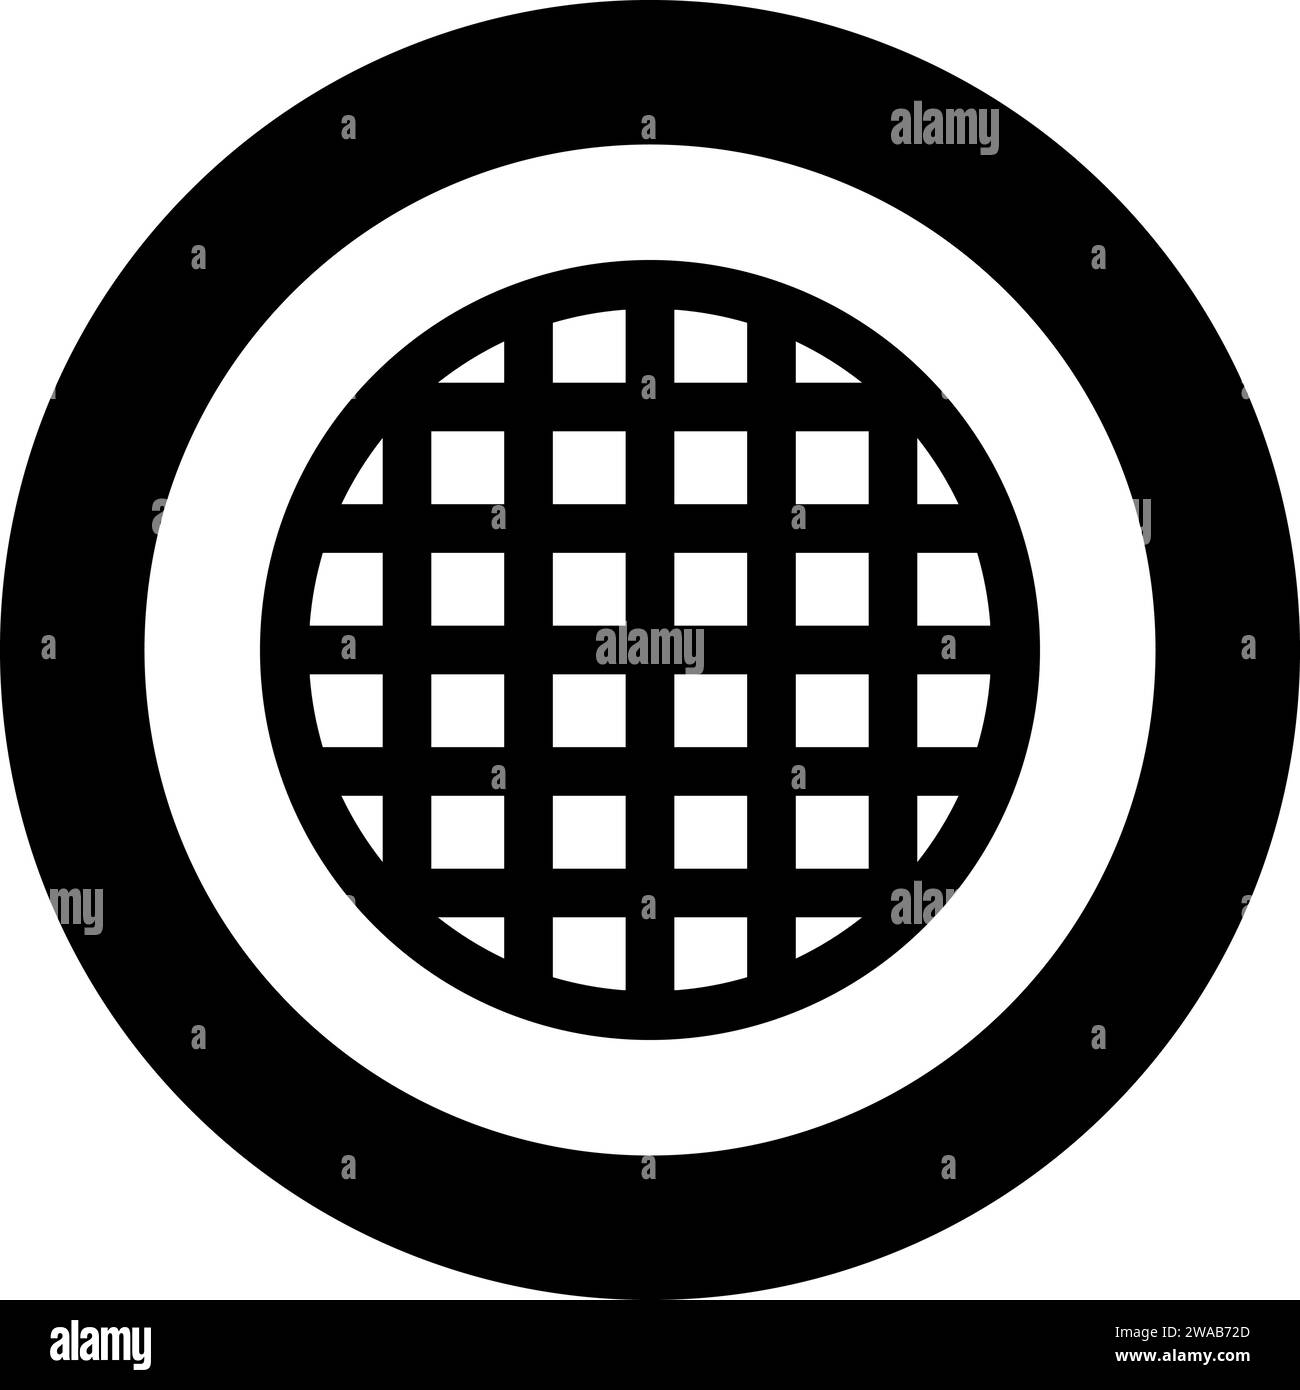 Grille de grille treillis treillis treillis treillis grillage grill grill grill surface de cuisson icône de forme ronde dans le cercle rond couleur noire illustration vectorielle image solide Illustration de Vecteur